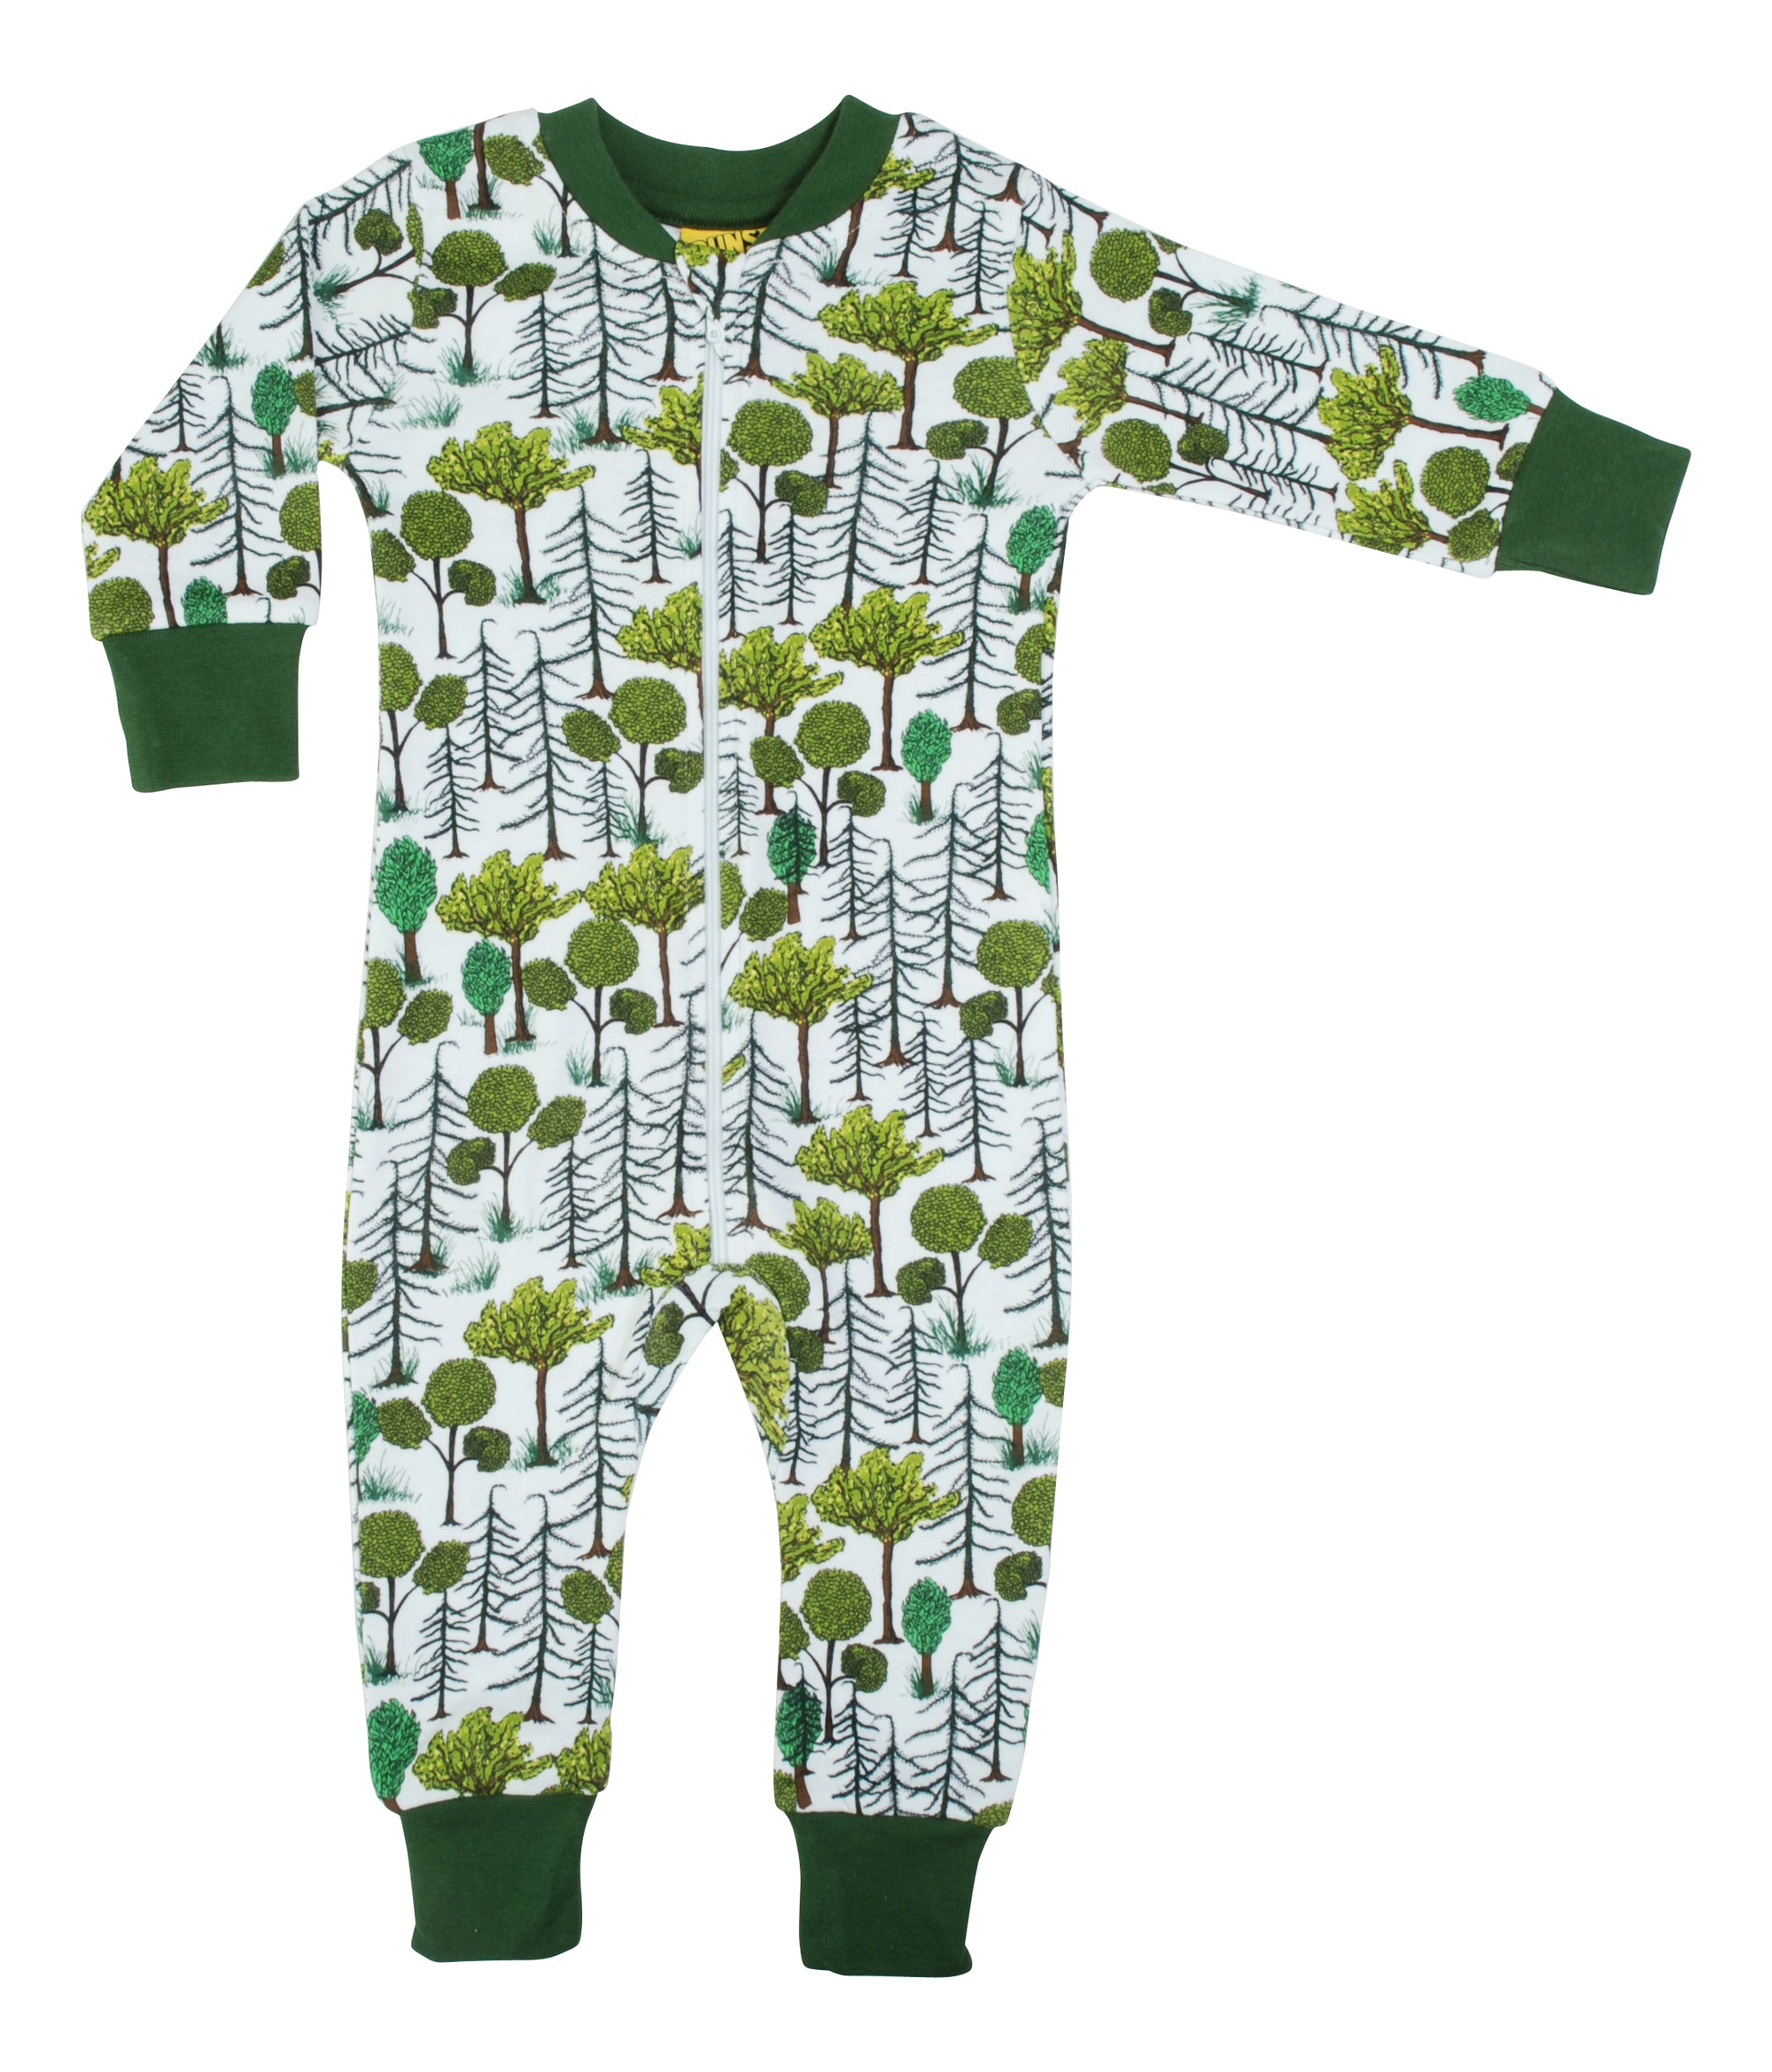 Transparant kassa Induceren Pyjama-pak met rits - GOEDvanToen - Eerlijke & biologische kinderkleding en  babykleding